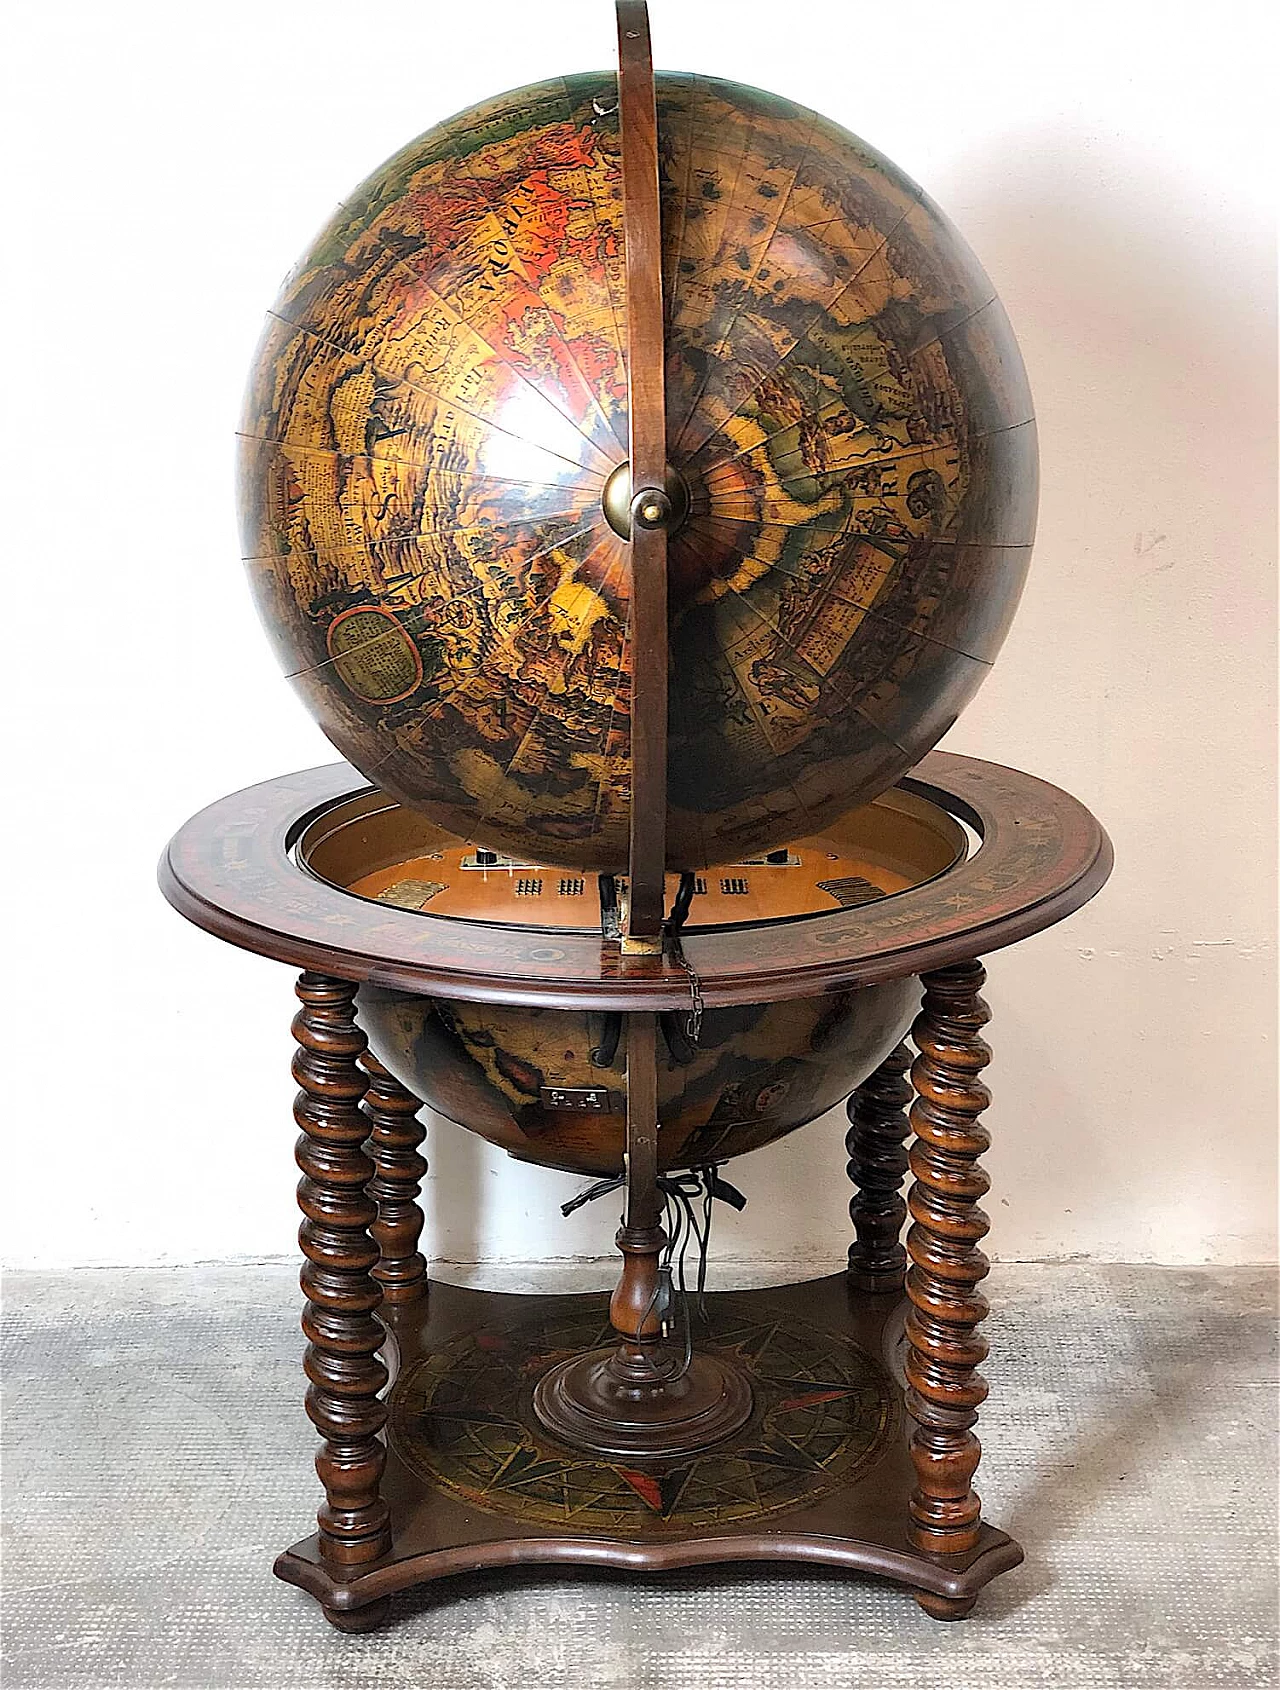 Wundersen globe-shaped television set, 1967 1367122